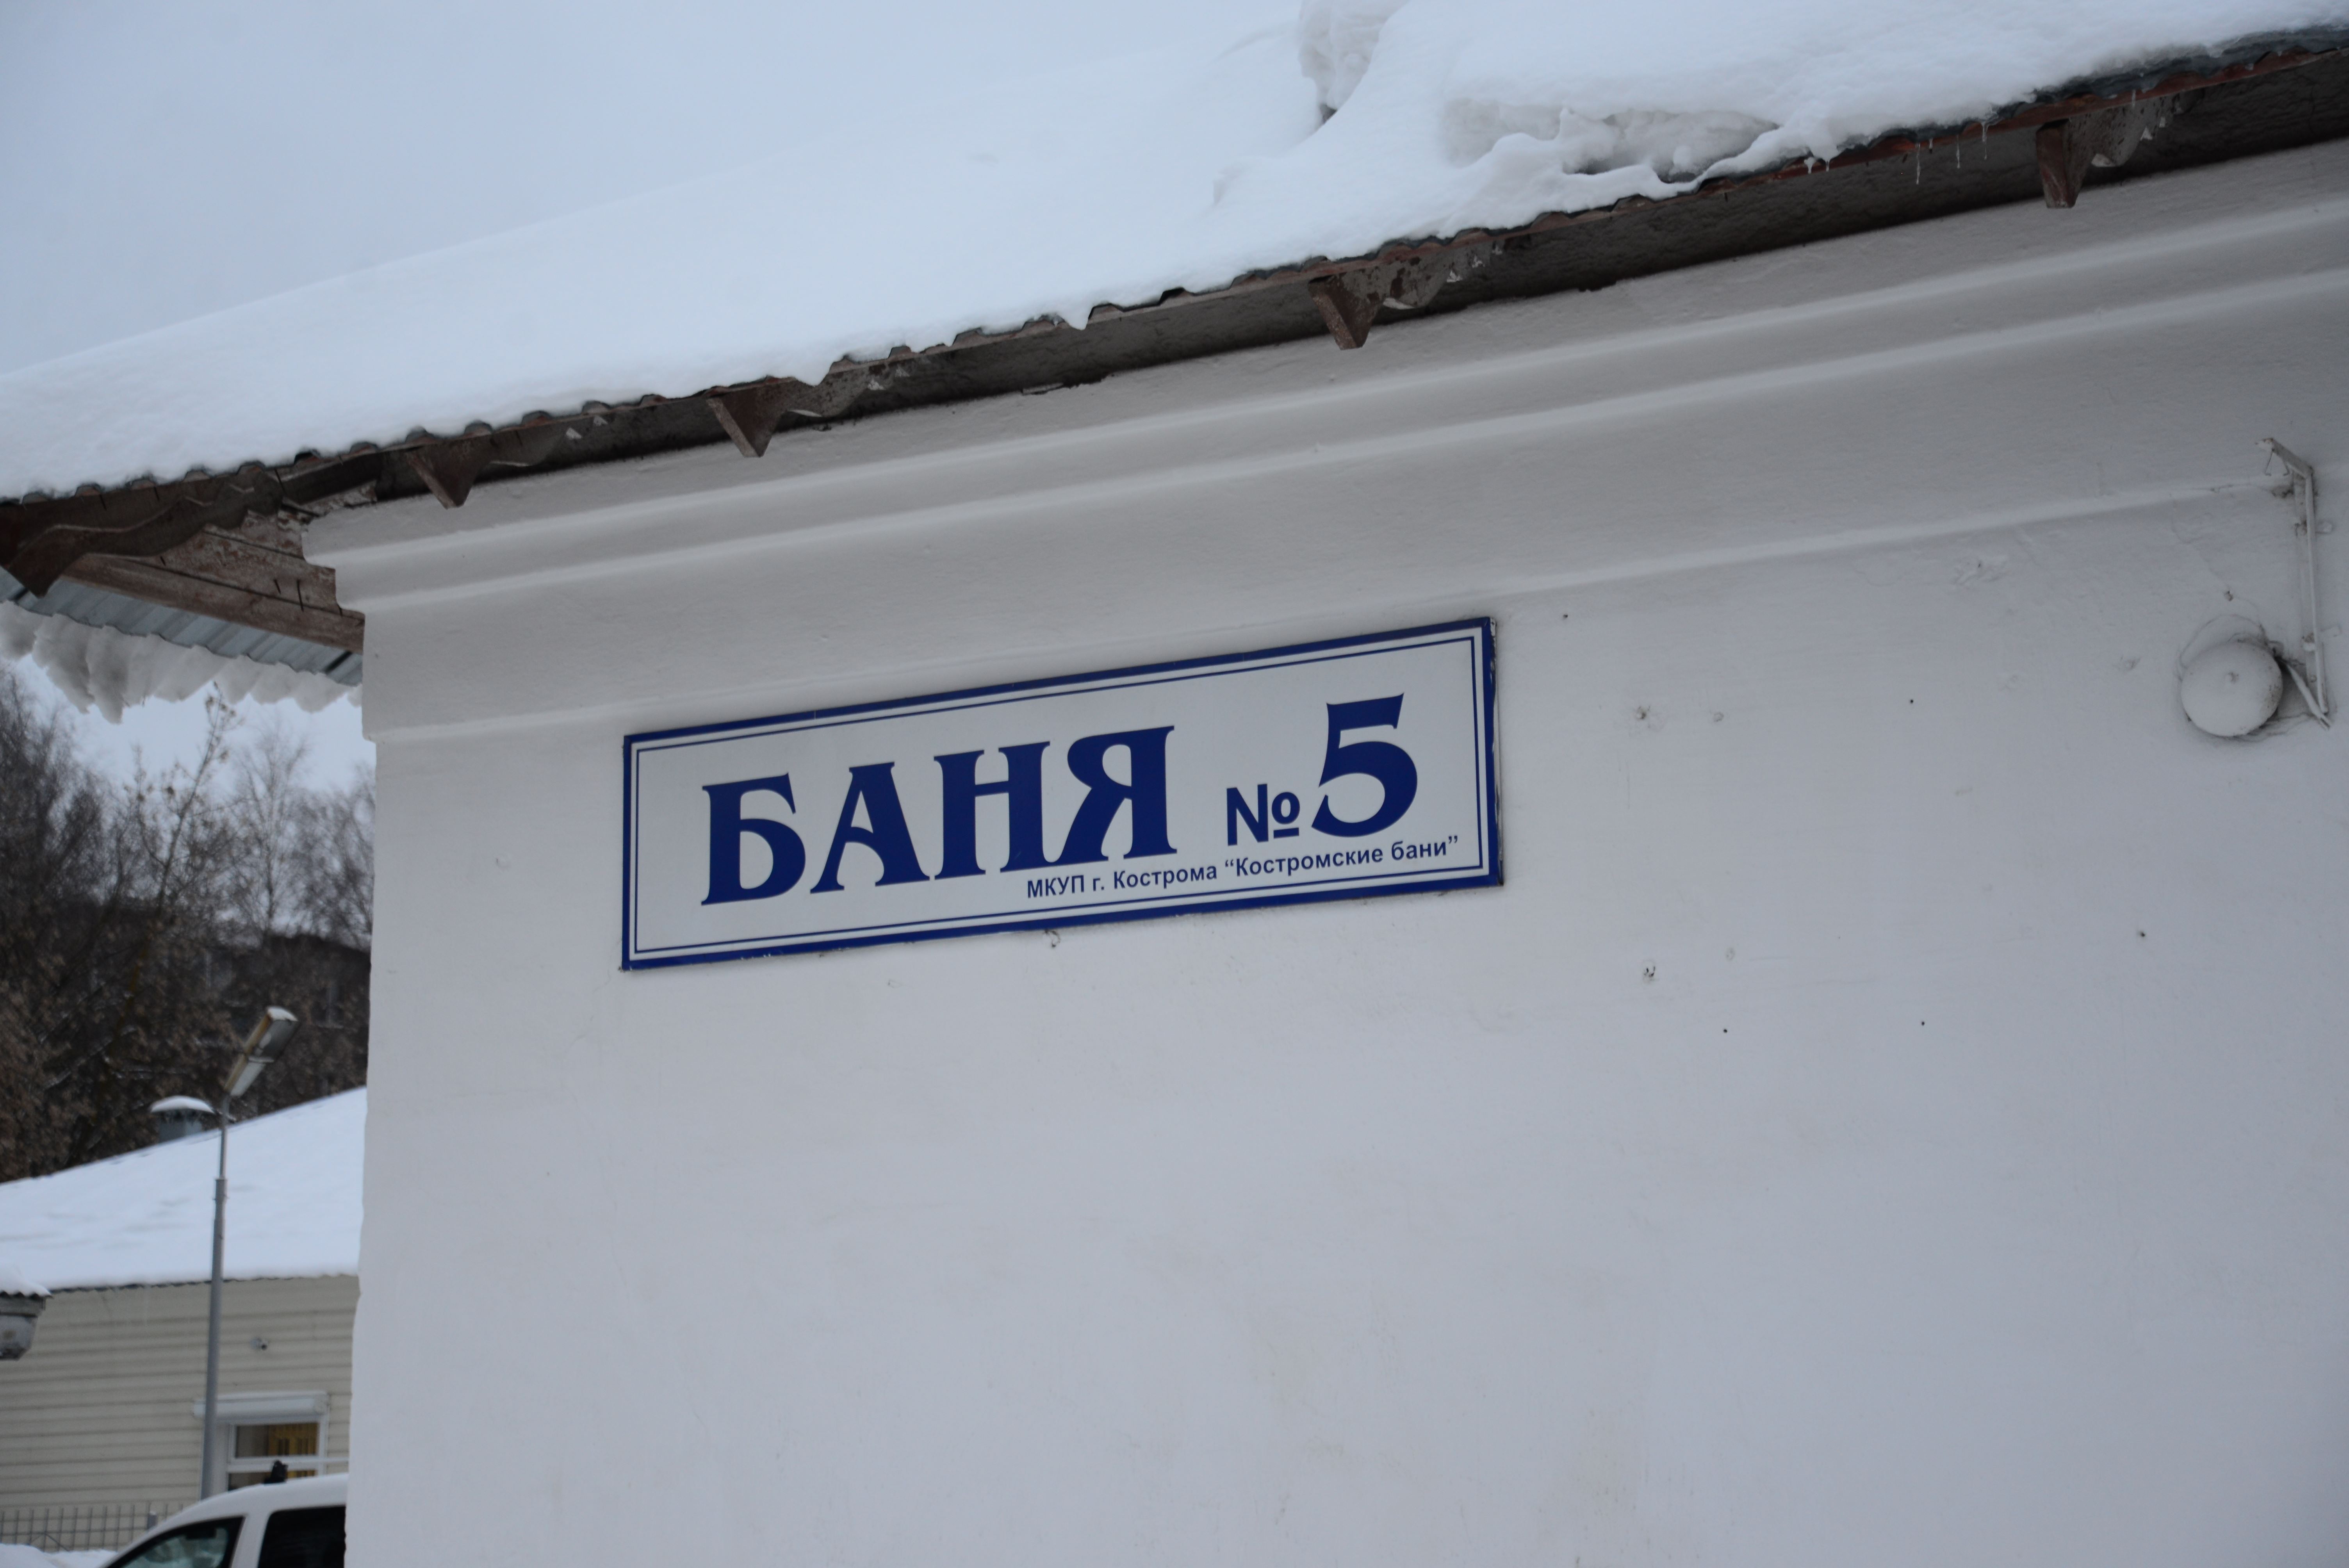 Со следующей среды баня № 5 на Кинешемском шоссе в Костроме меняет график работы